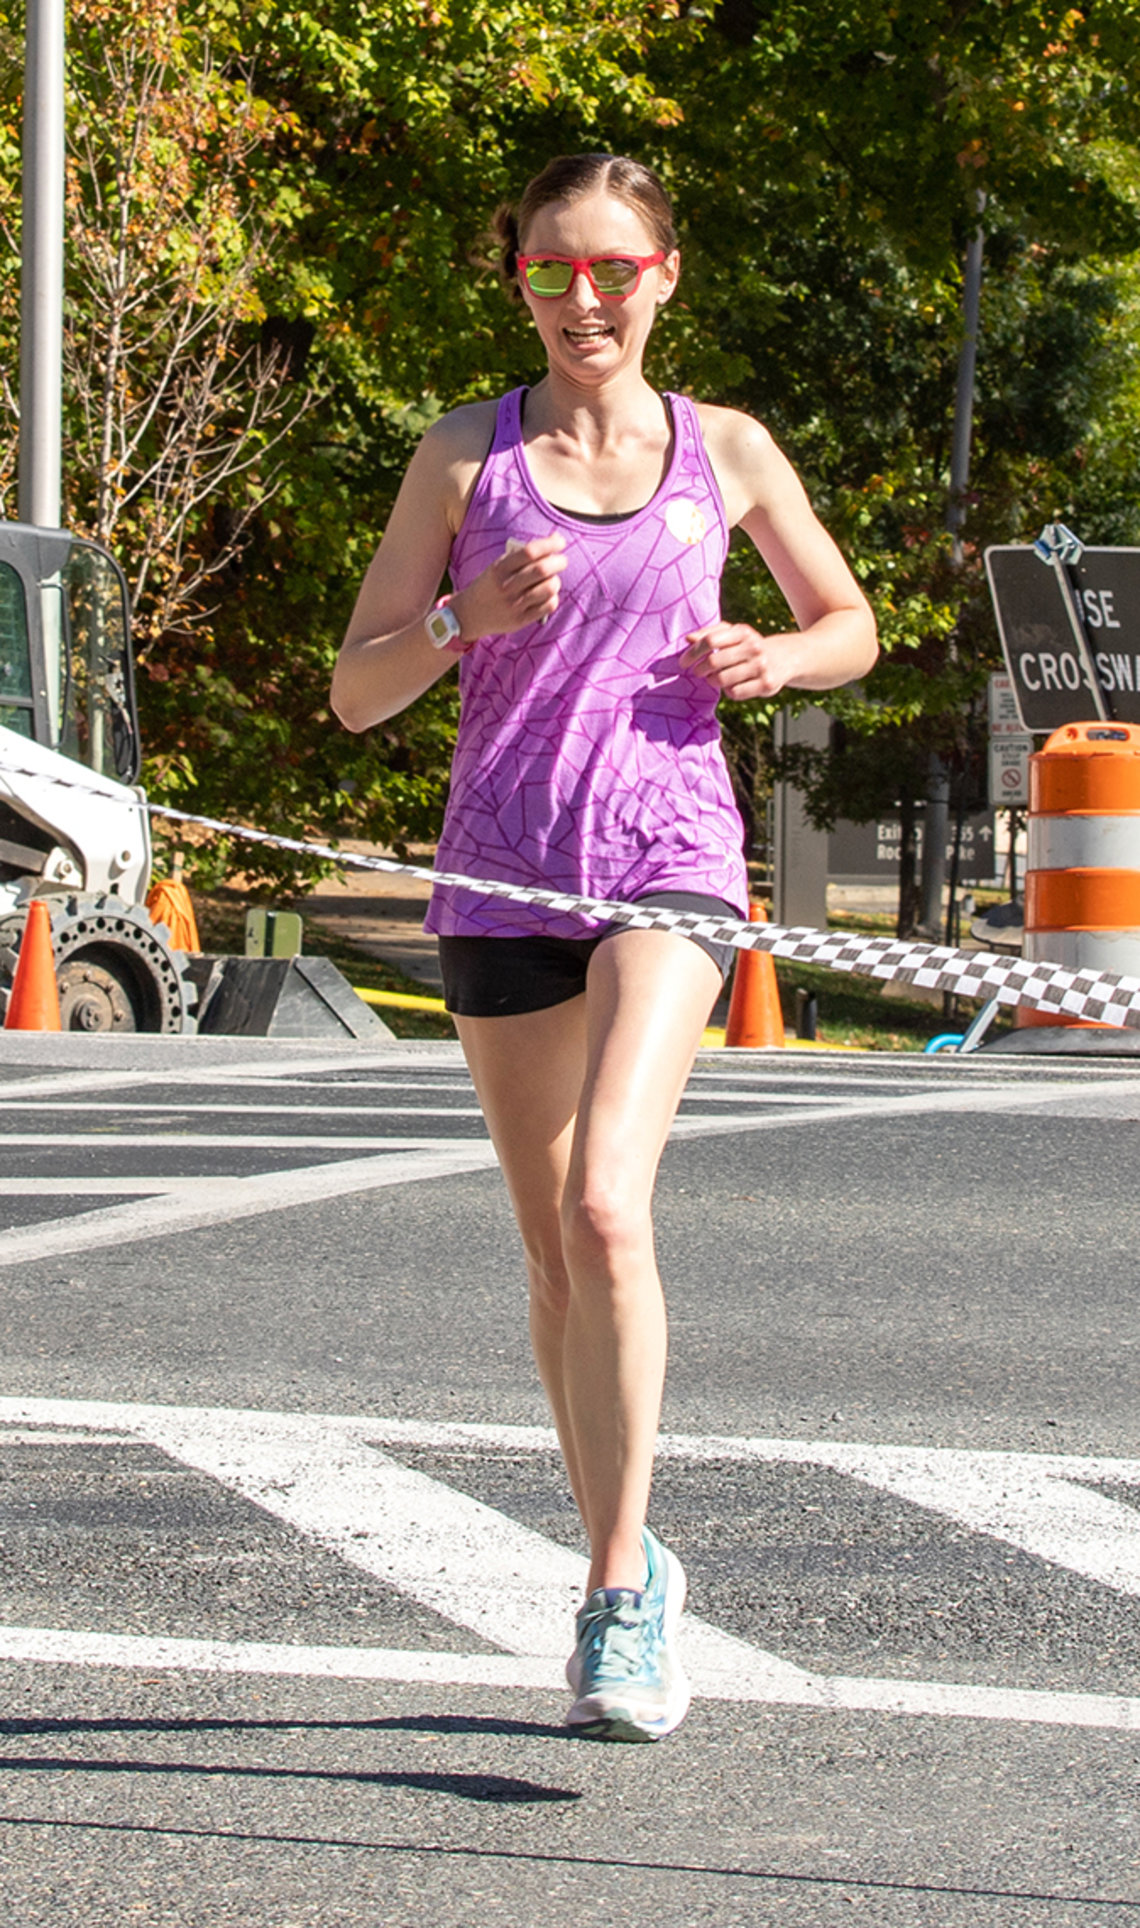 Female runner crosses finish line.